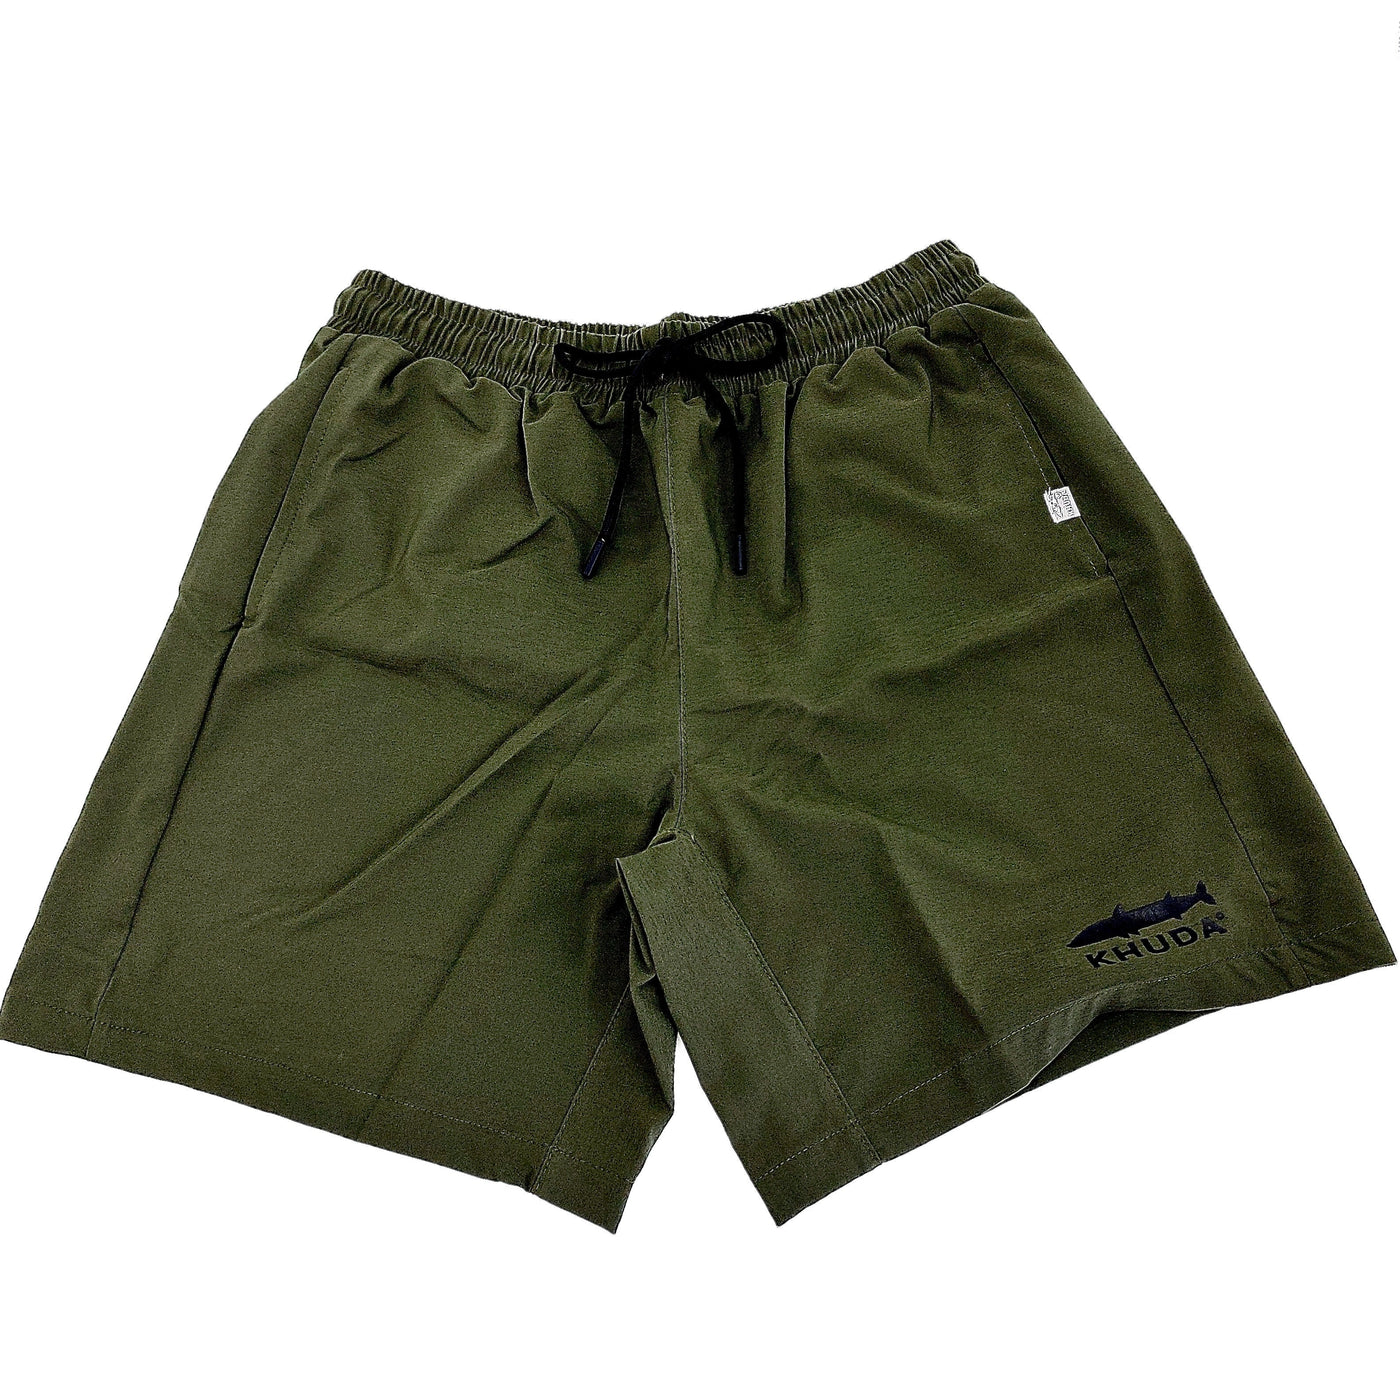 Pantaloneta poliester verde militar c para hombre